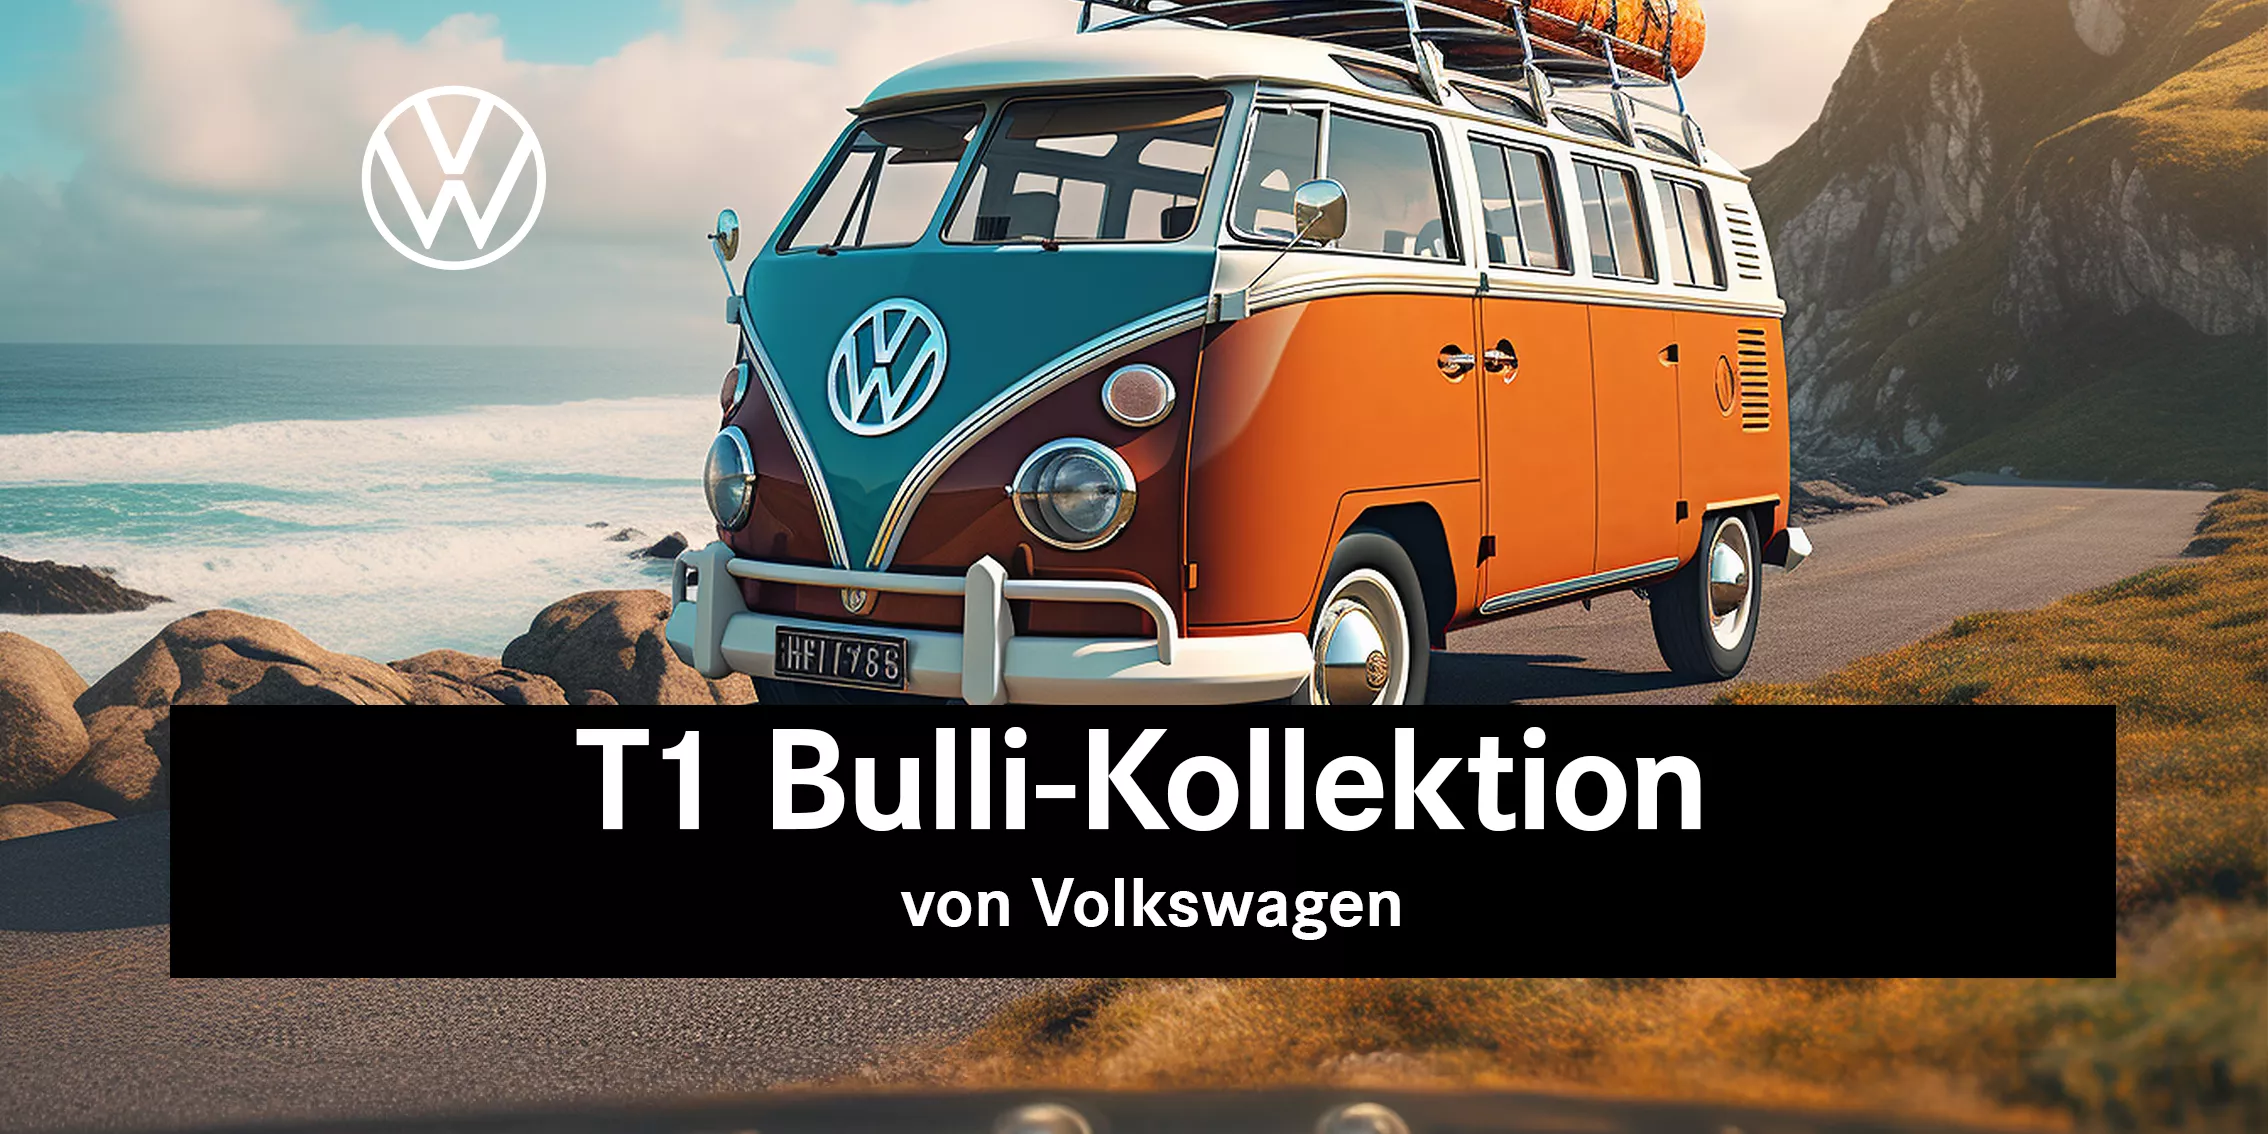 T1 bulli kollektion von volkswagen teaser